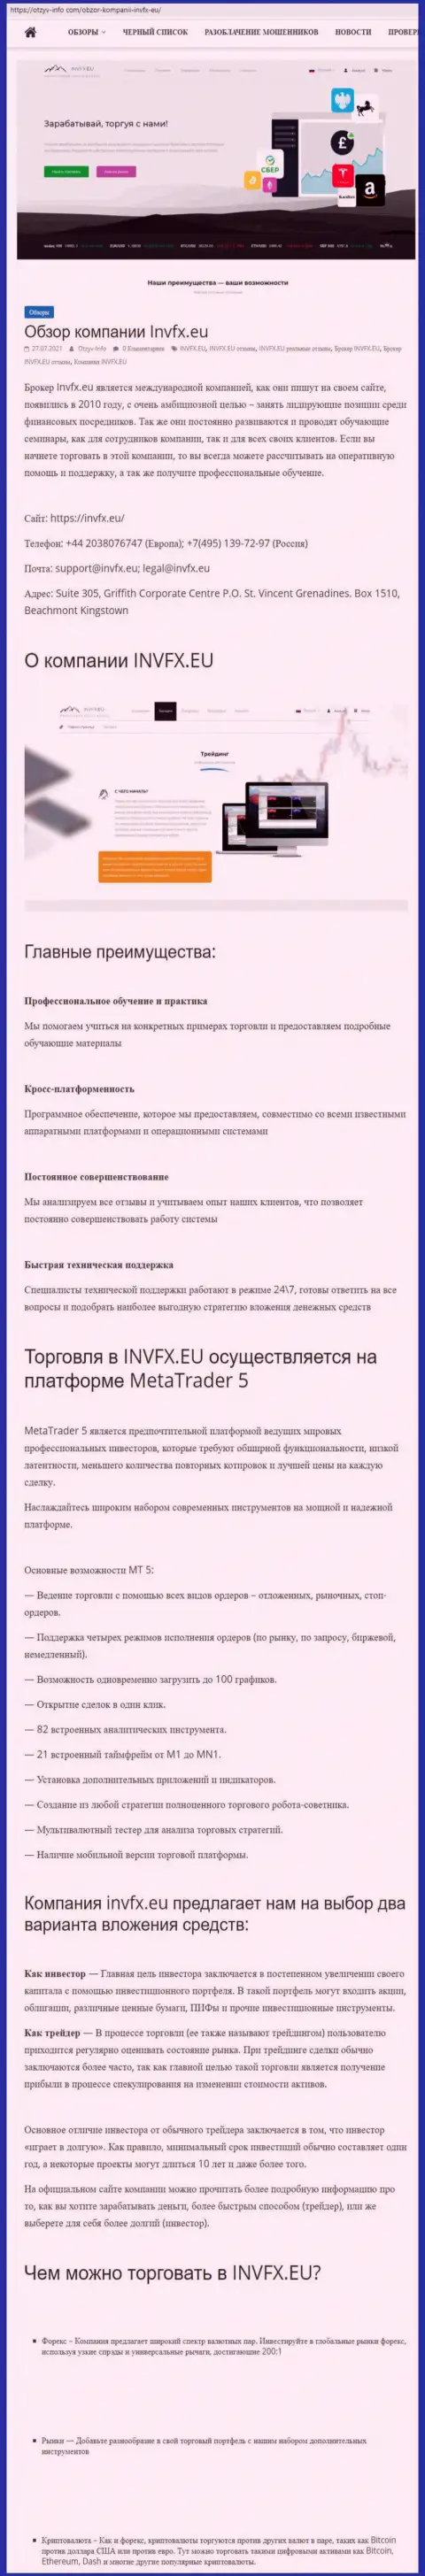 Информационный портал Otzyv Info Com разместил статью о форекс-брокерской компании INVFX Eu